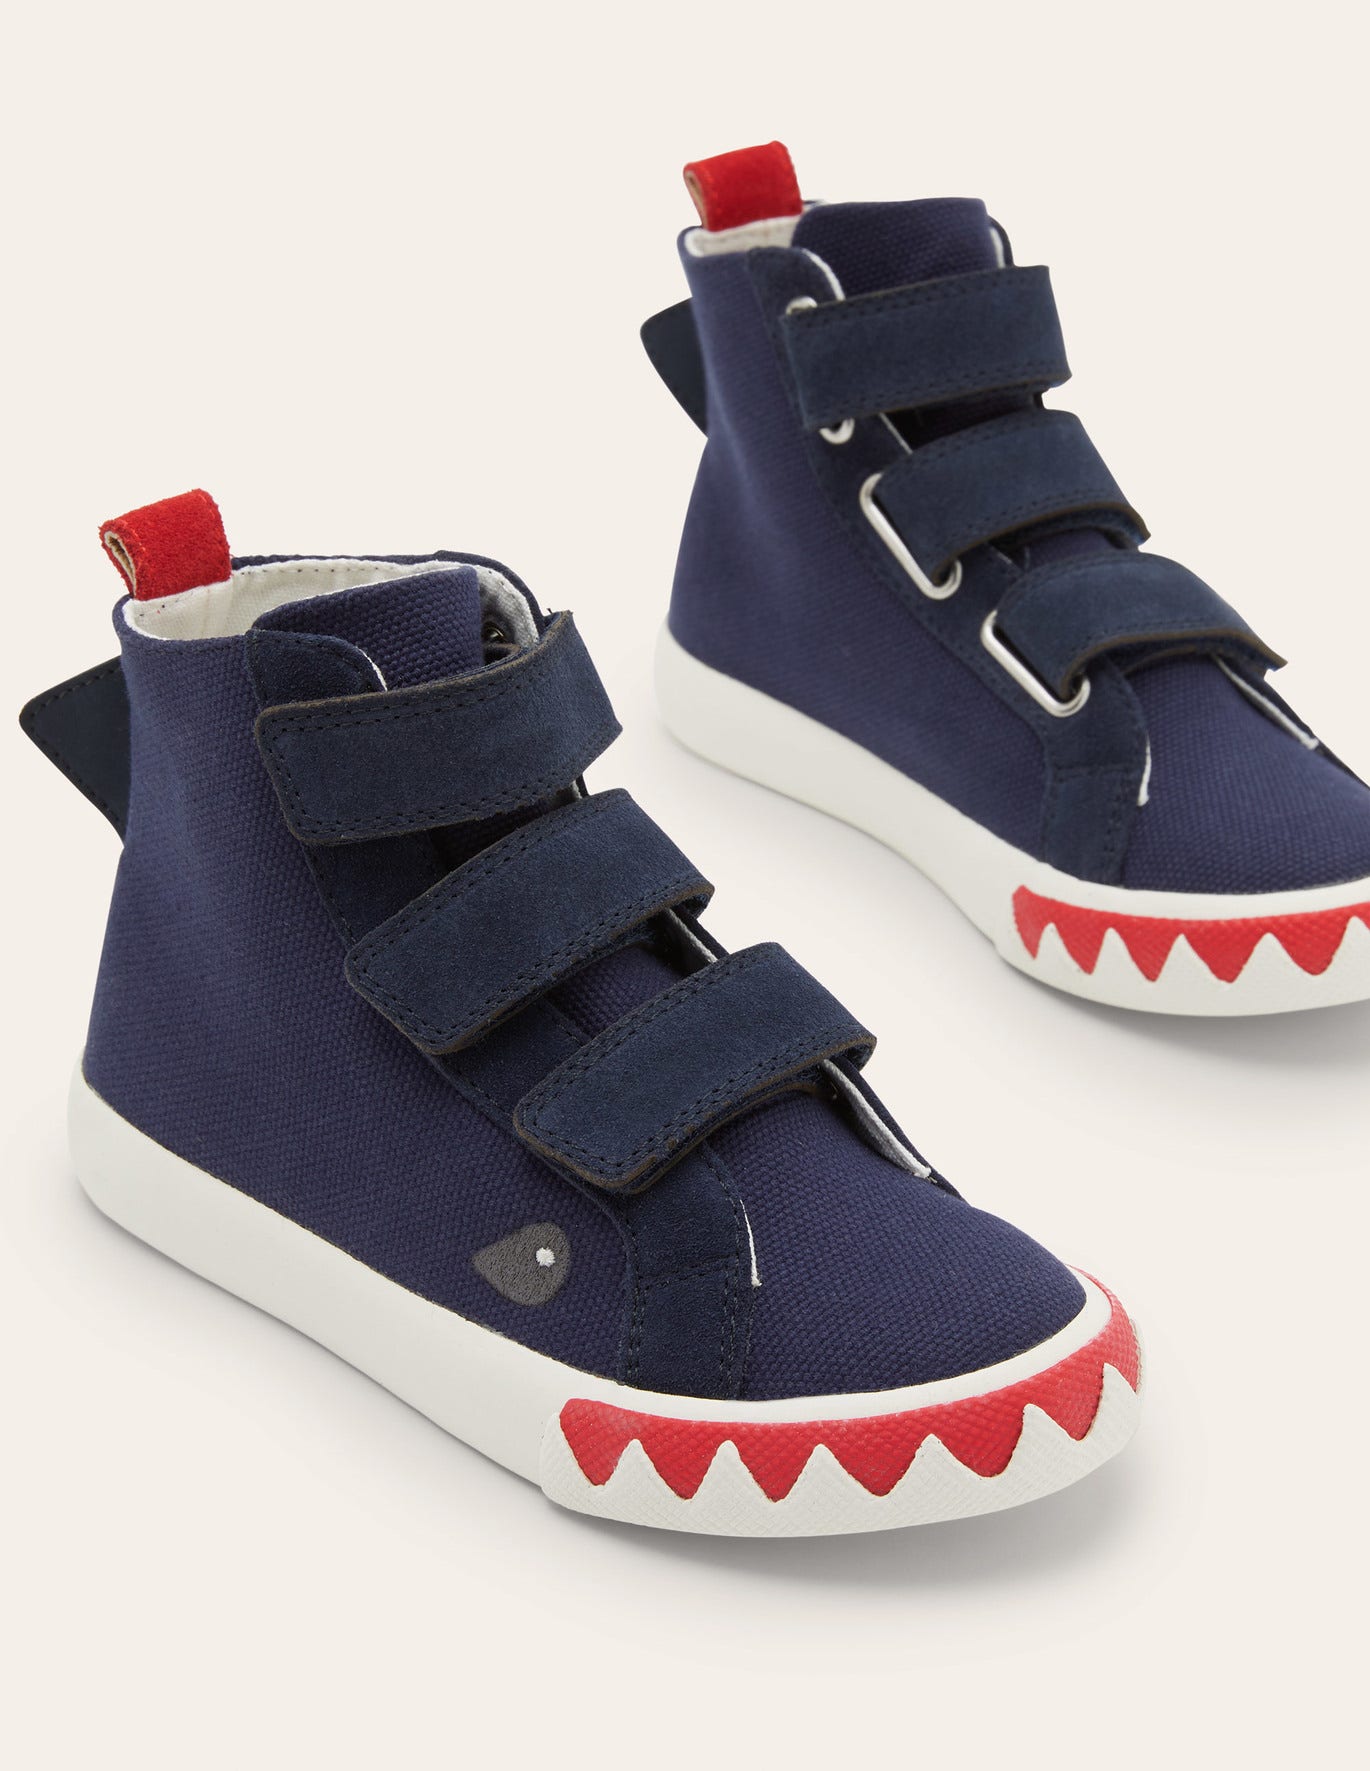 Boden Navy Shark High Top Sneakers - College Navy